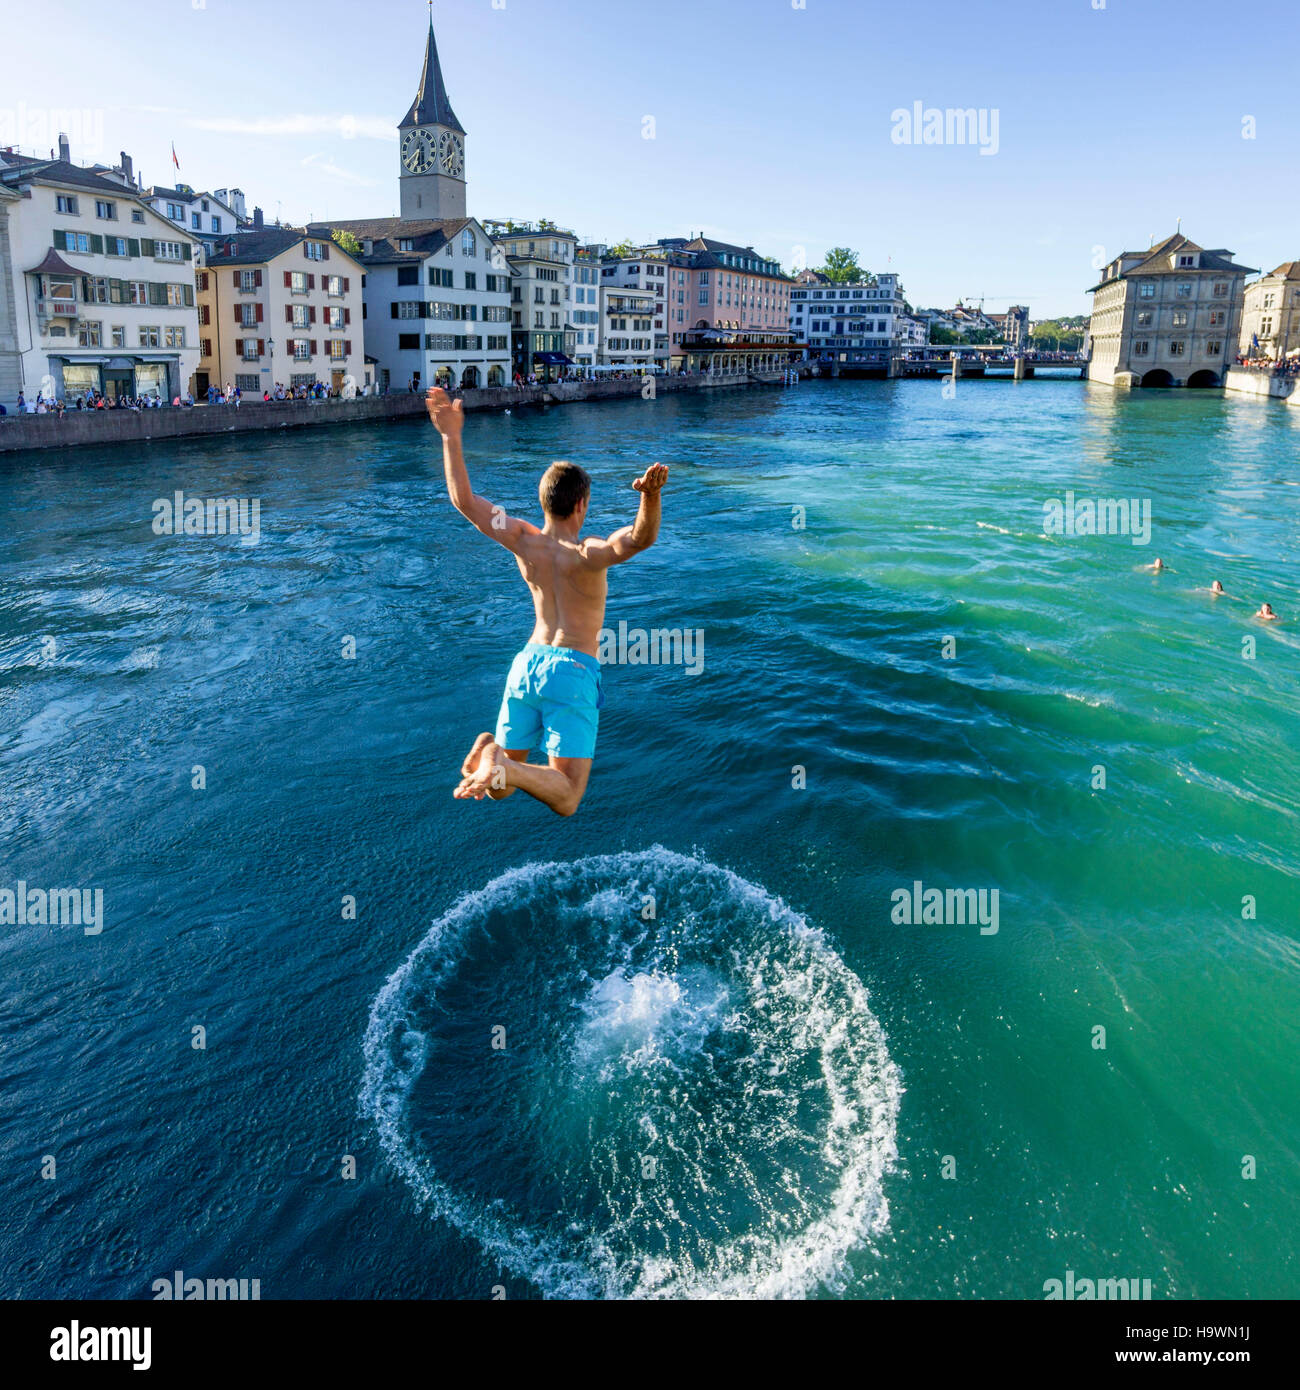 Mann springt in den Fluss Limmat, Zürich, Schweiz Stockfoto